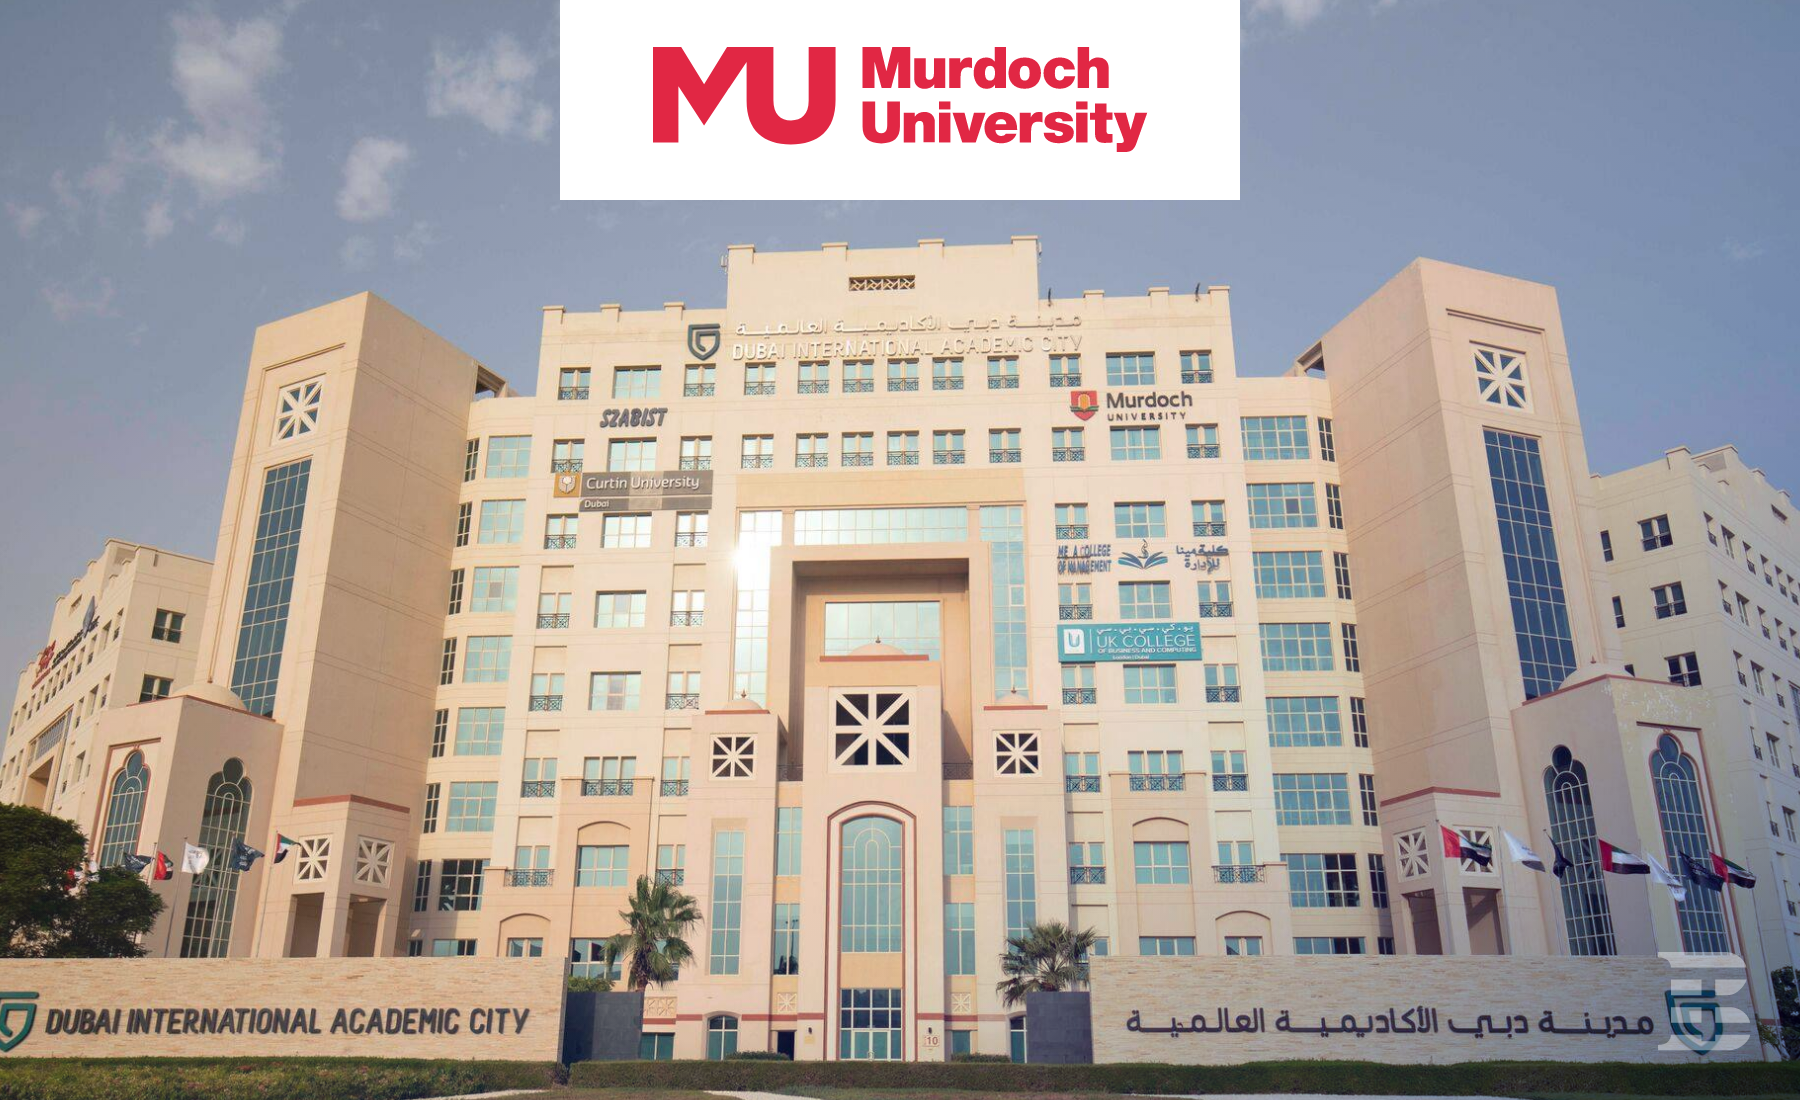 Murdoch University in Dubai